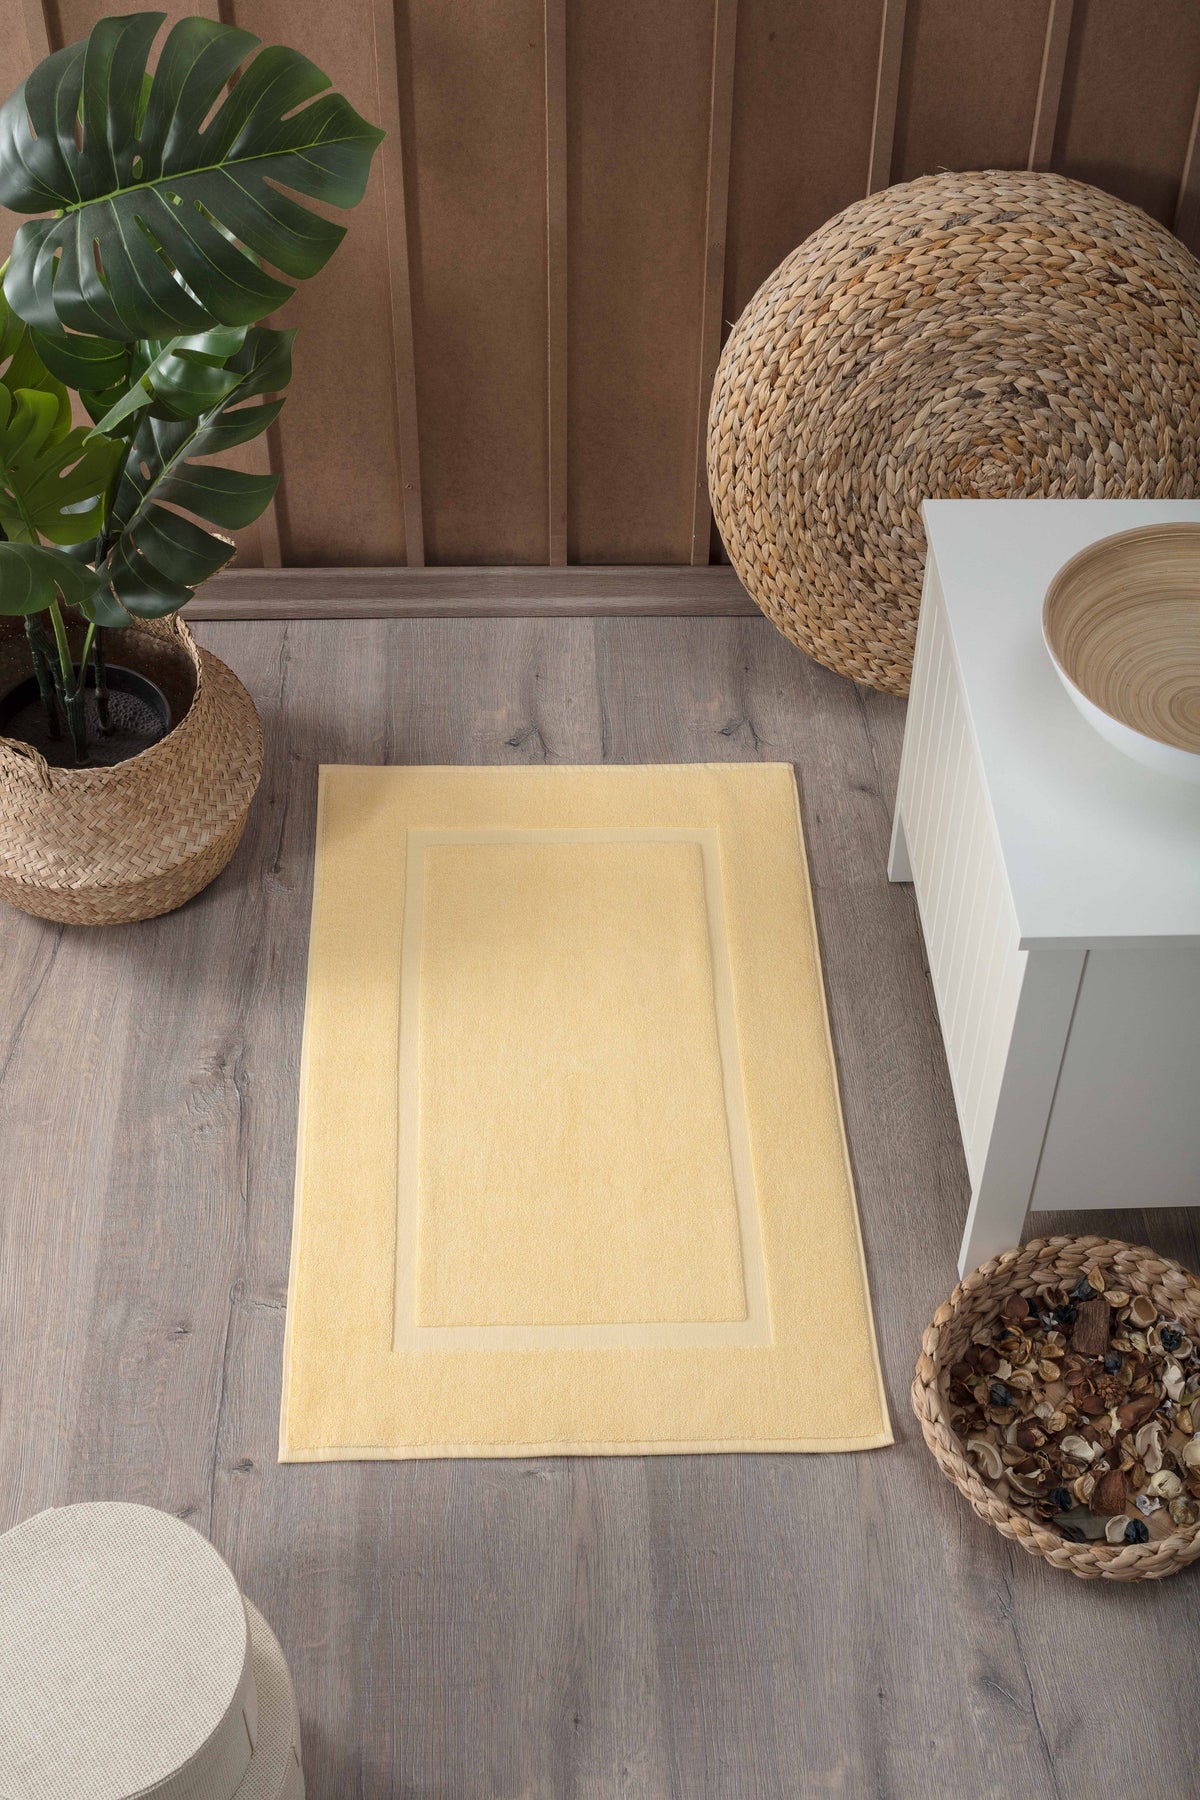 Bath mats - Bath rugs - IKEA